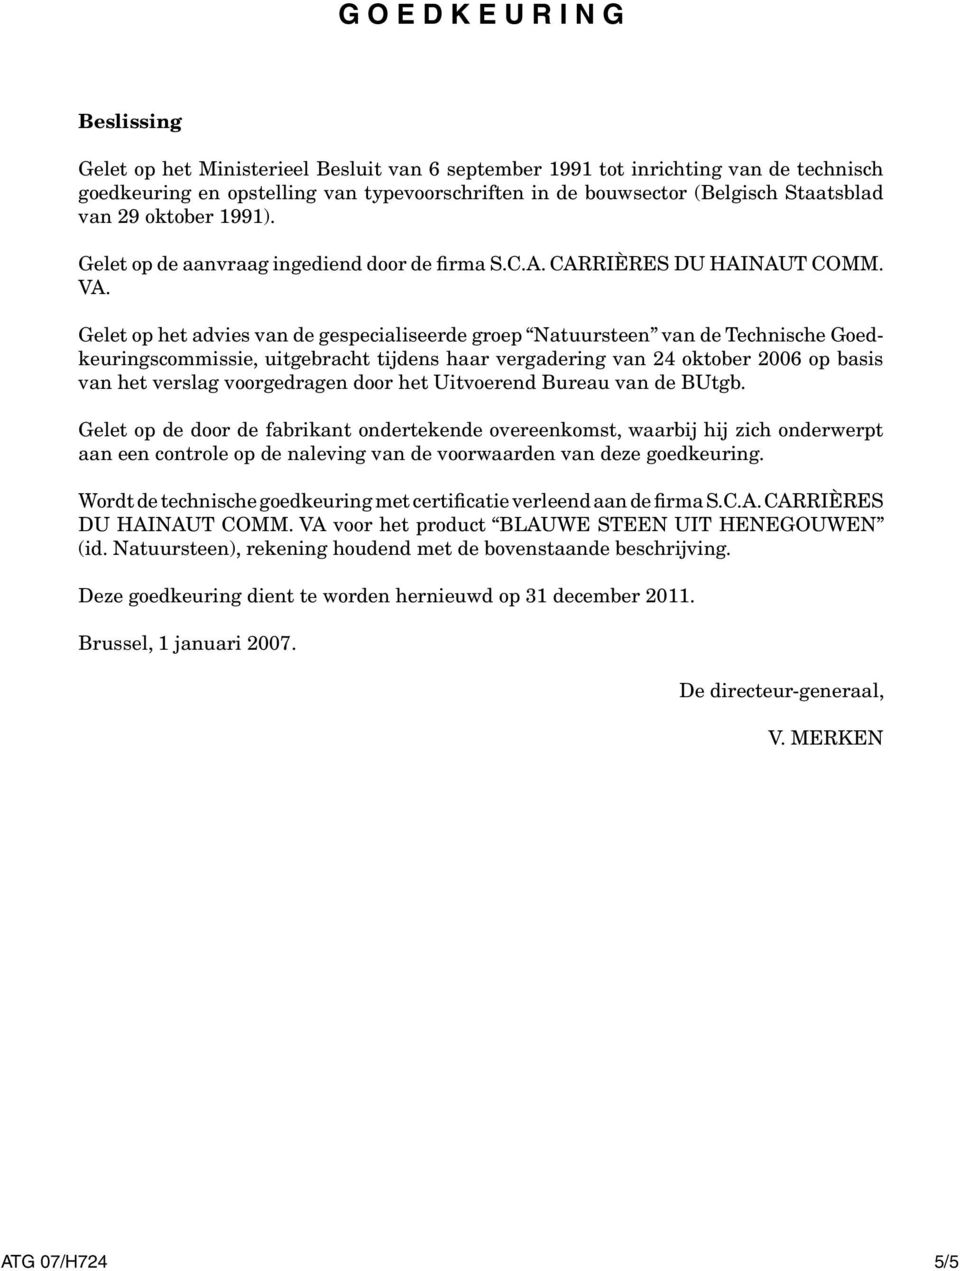 Gelet op het advies van de gespecialiseerde groep Natuursteen van de Technische Goedkeuringscommissie, uitgebracht tijdens haar vergadering van 24 oktober 2006 op basis van het verslag voorgedragen